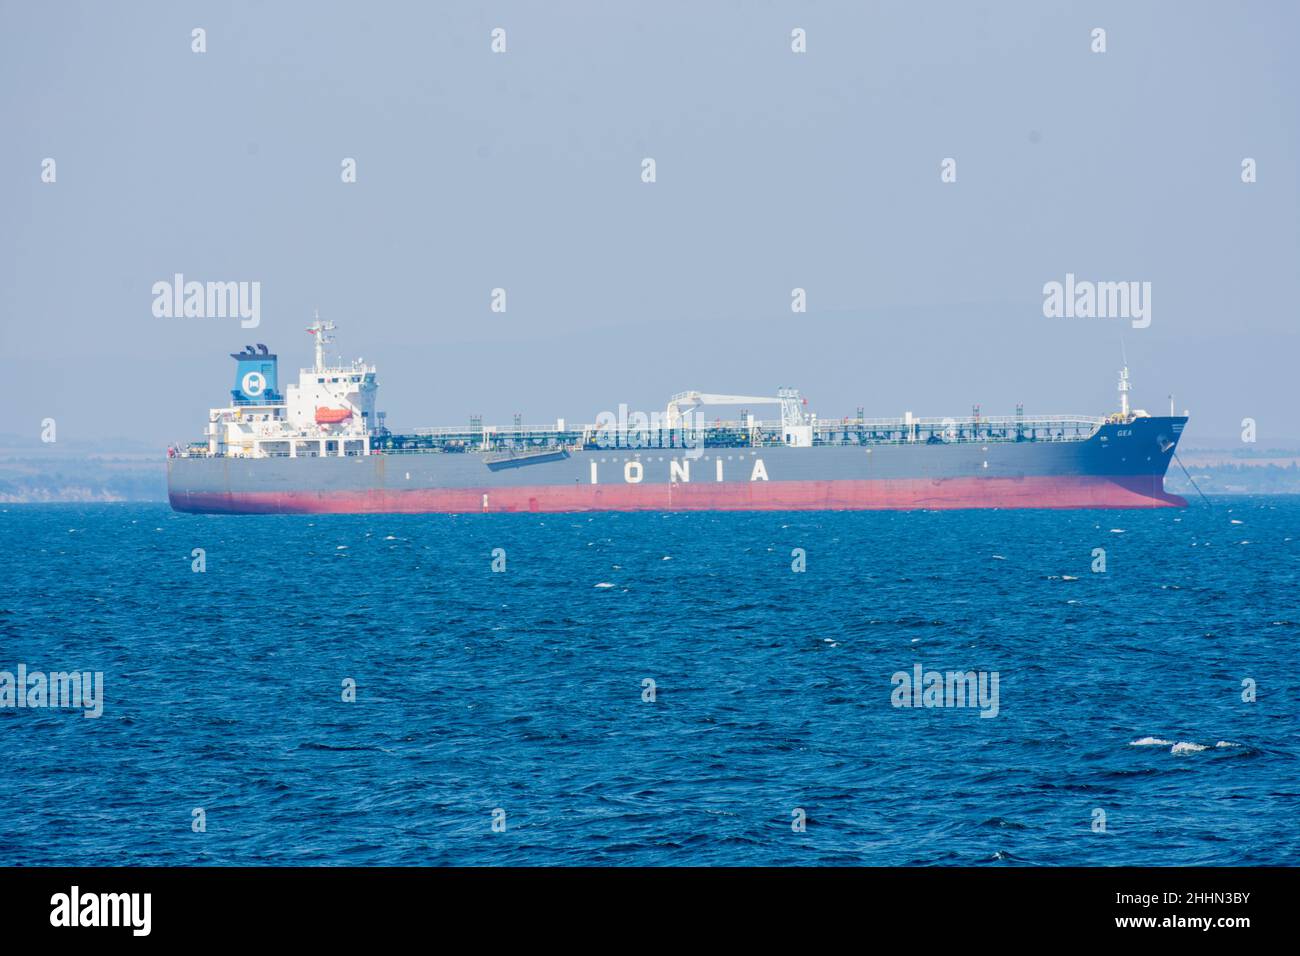 Navire de cargaison grec Ionia dans la mer Noire près du port de Burgas, Bulgarie. Banque D'Images